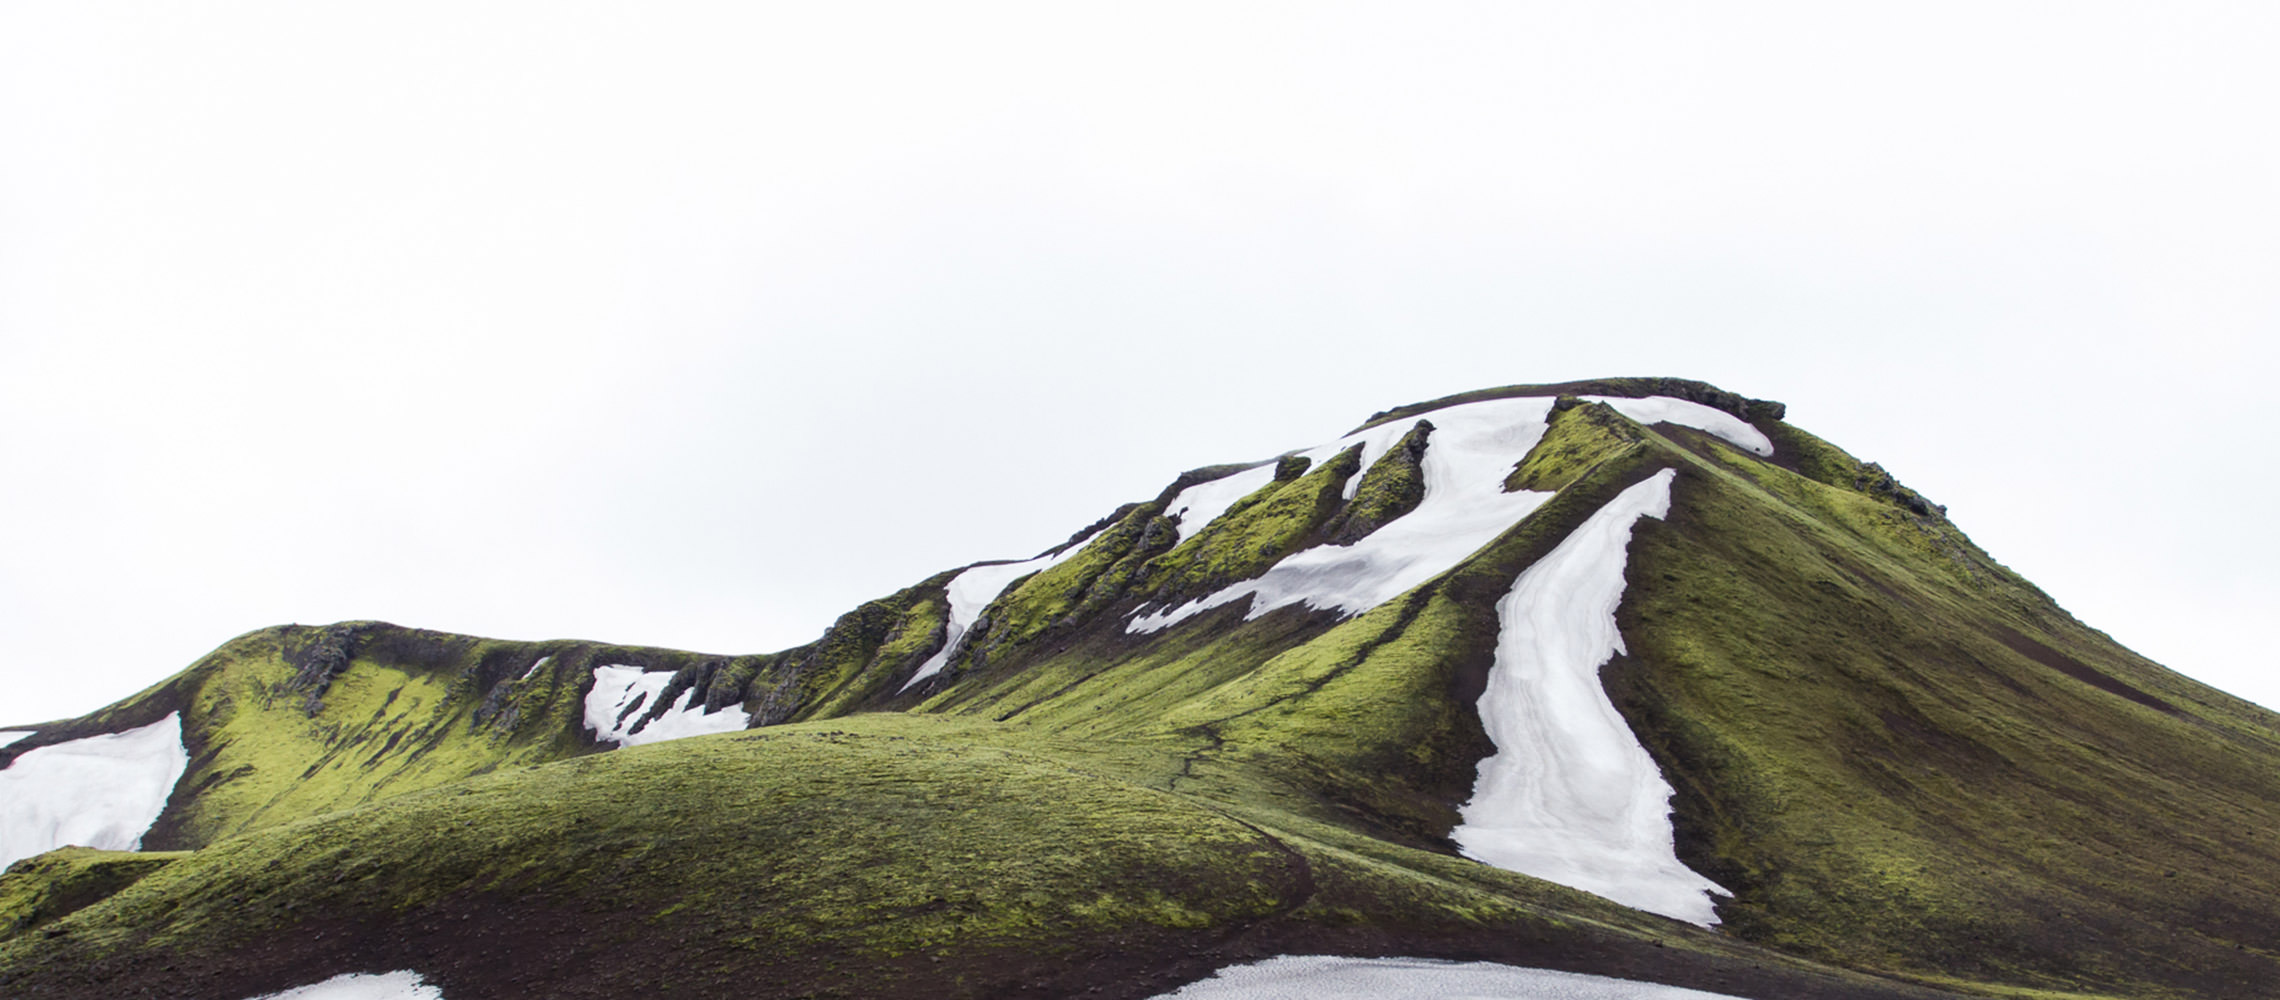 Paisagem de montanha verde com geleiras de gelo isoladas.